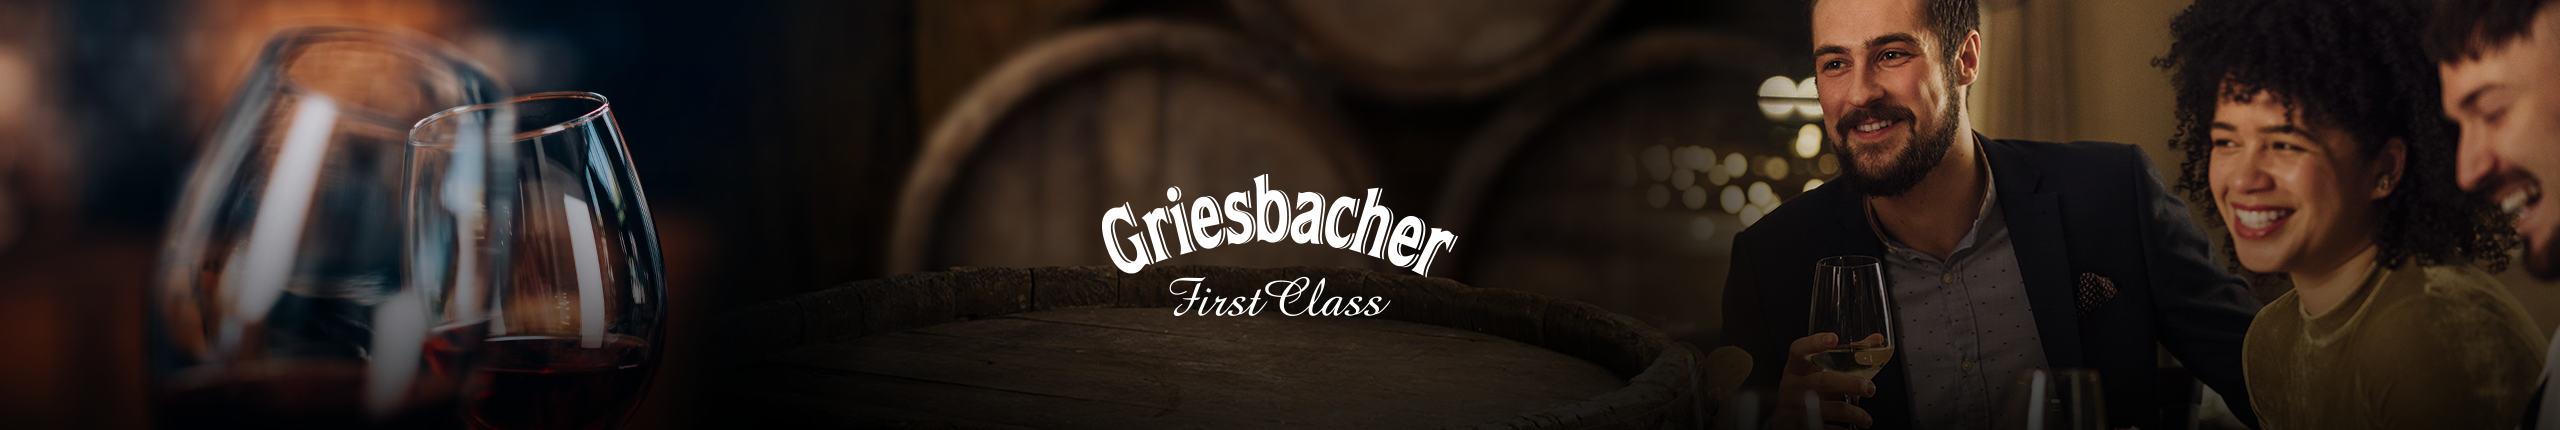 Griesbacher und Wein 